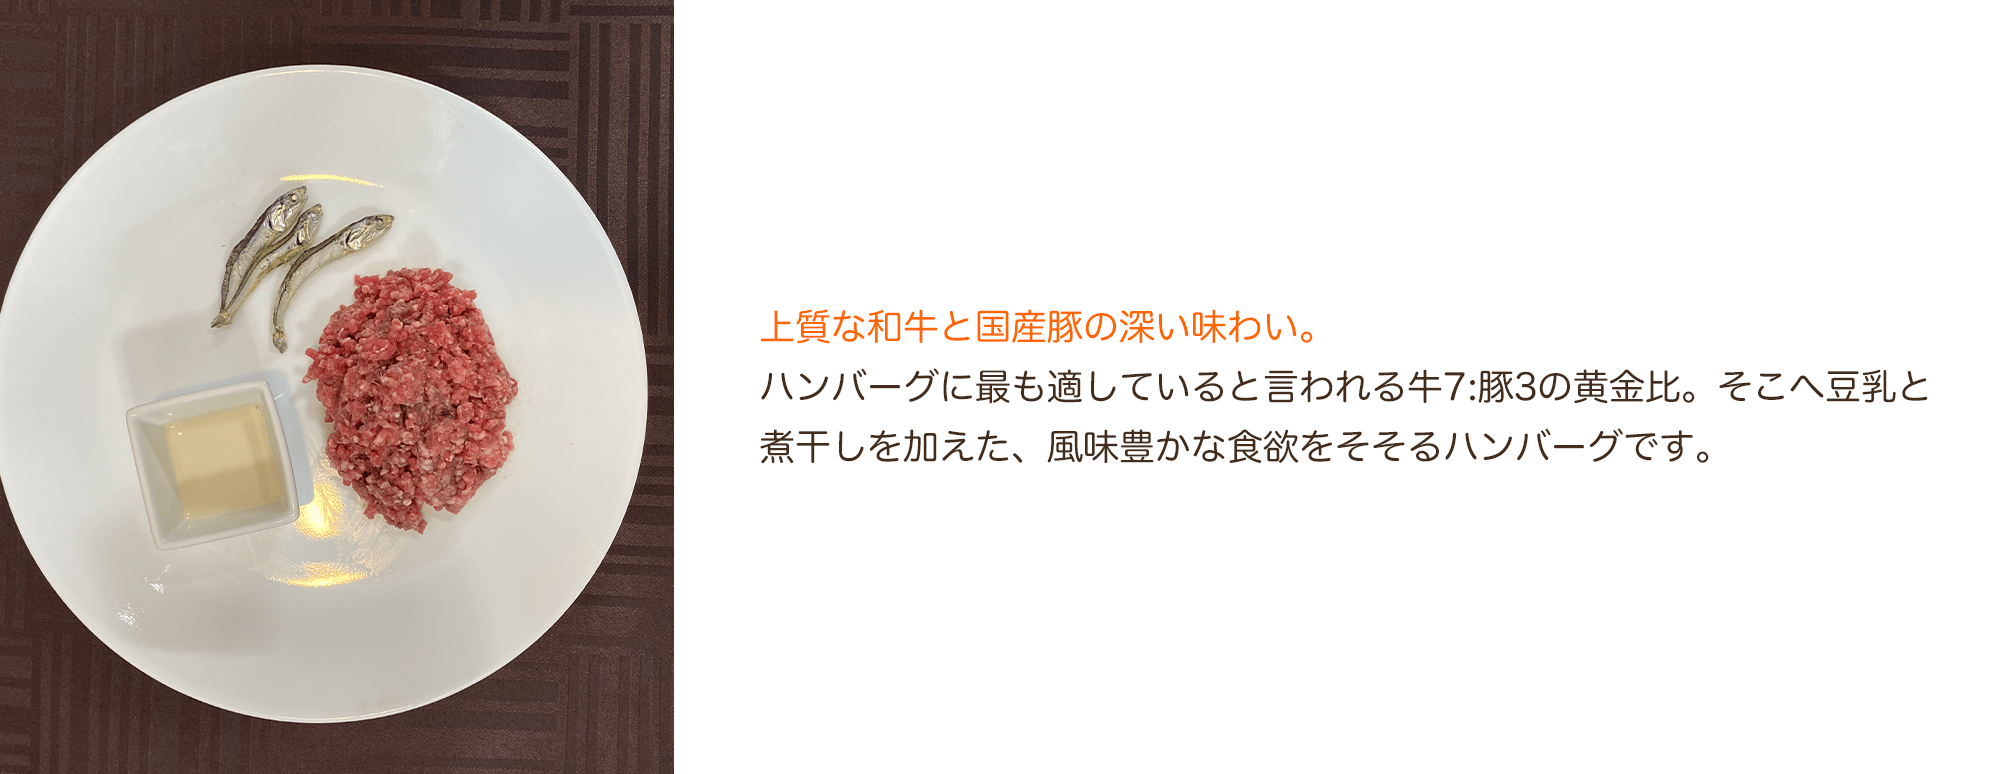 【定期購入】豆乳仕立ての特製チーズハンバーグ(5個セット)